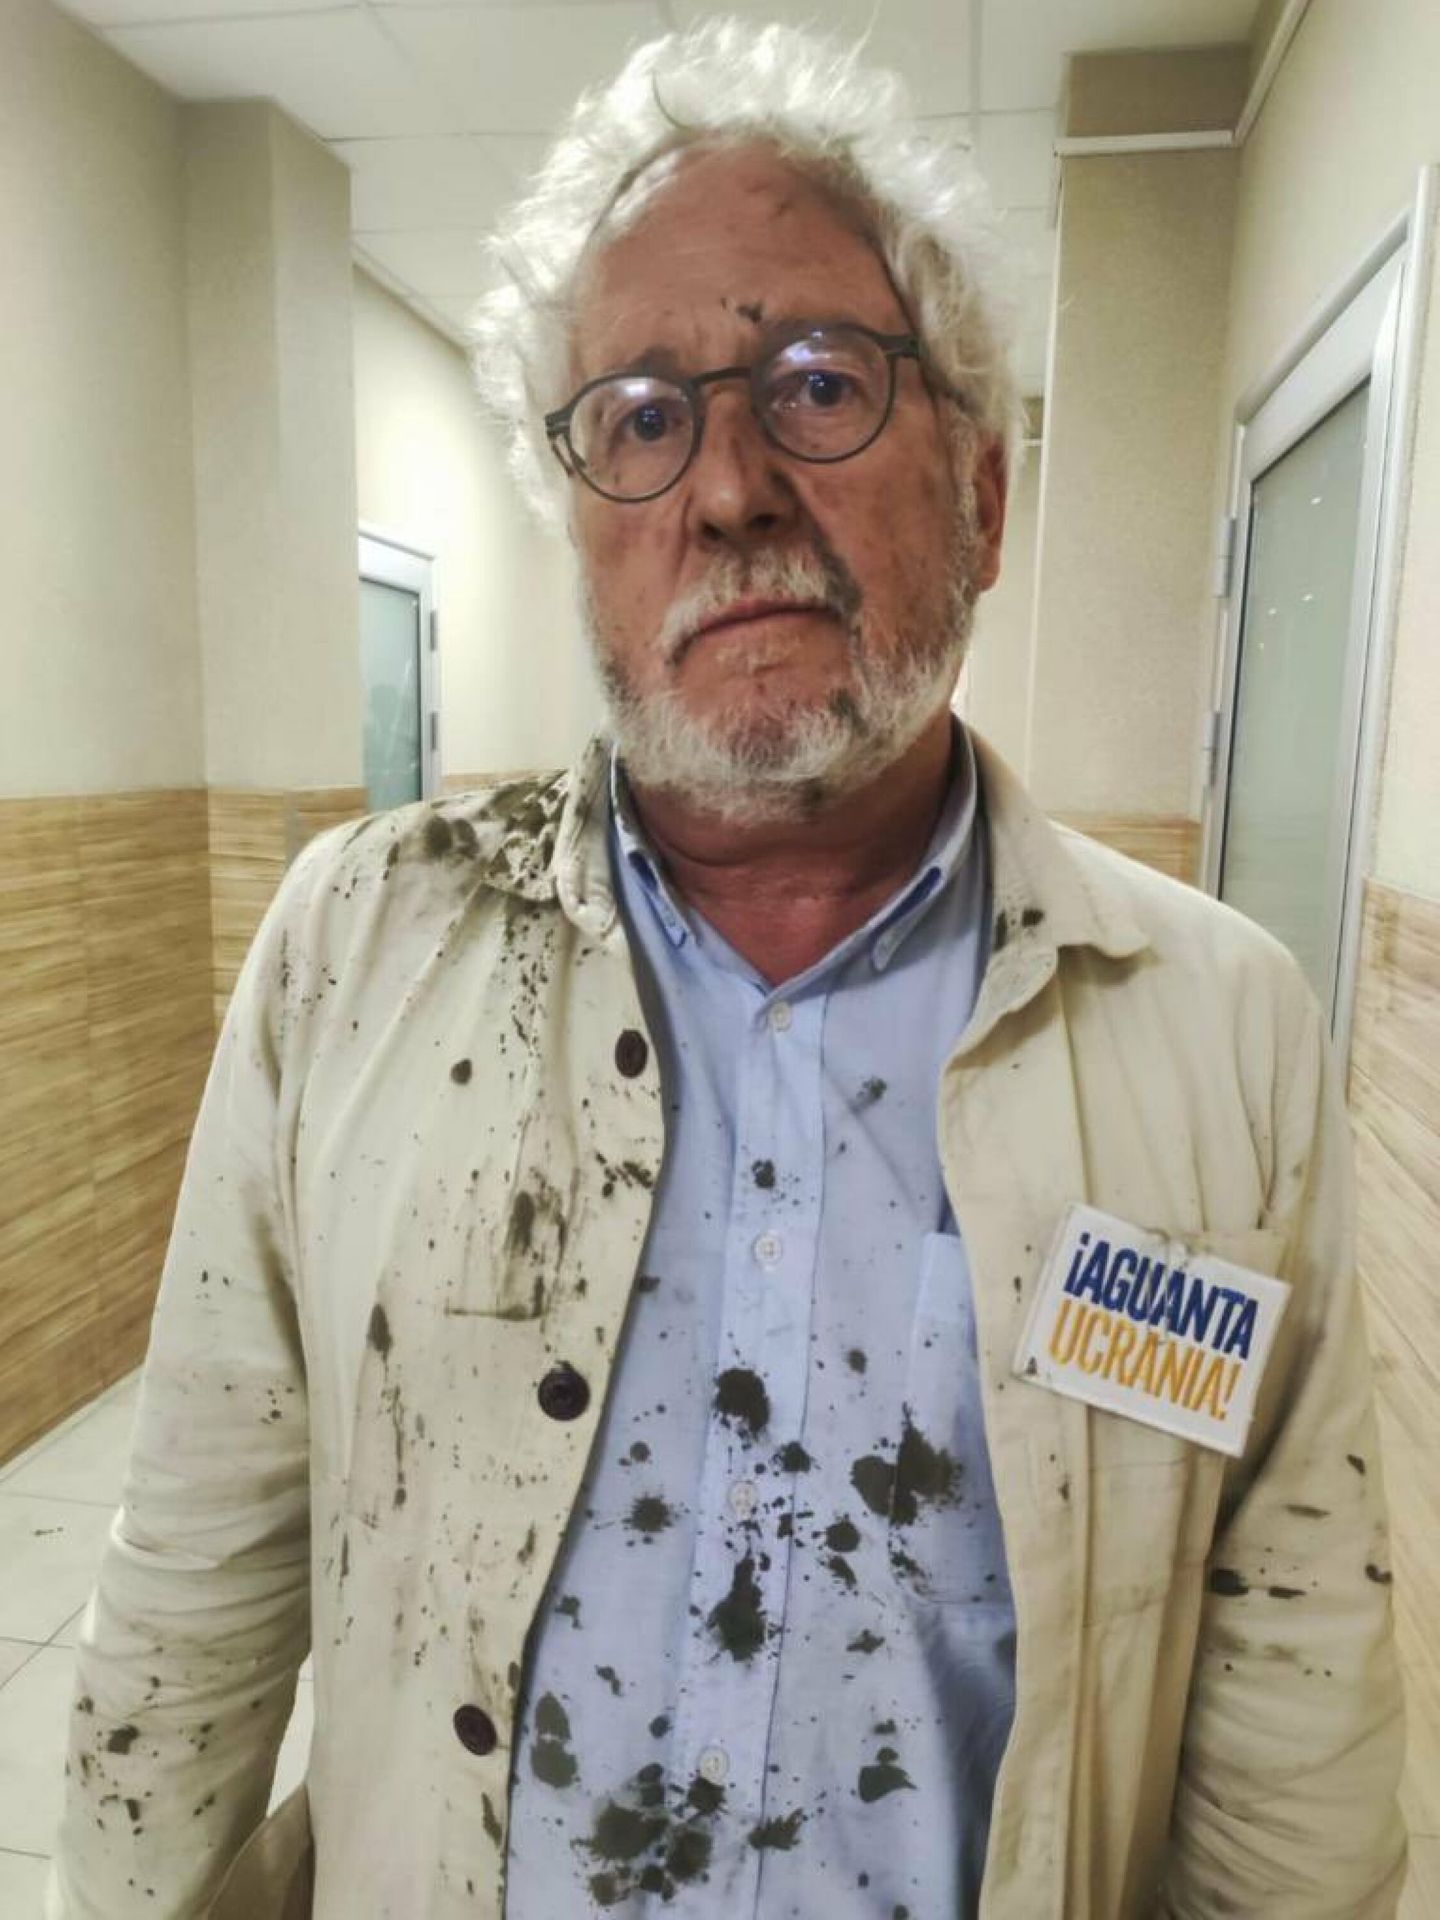 El escritor Héctor Abad Fanciolince tras el lanzamiento de un misil ruso contra el restaurante de Kramatorsk en el que estaba cenando. (EFE)